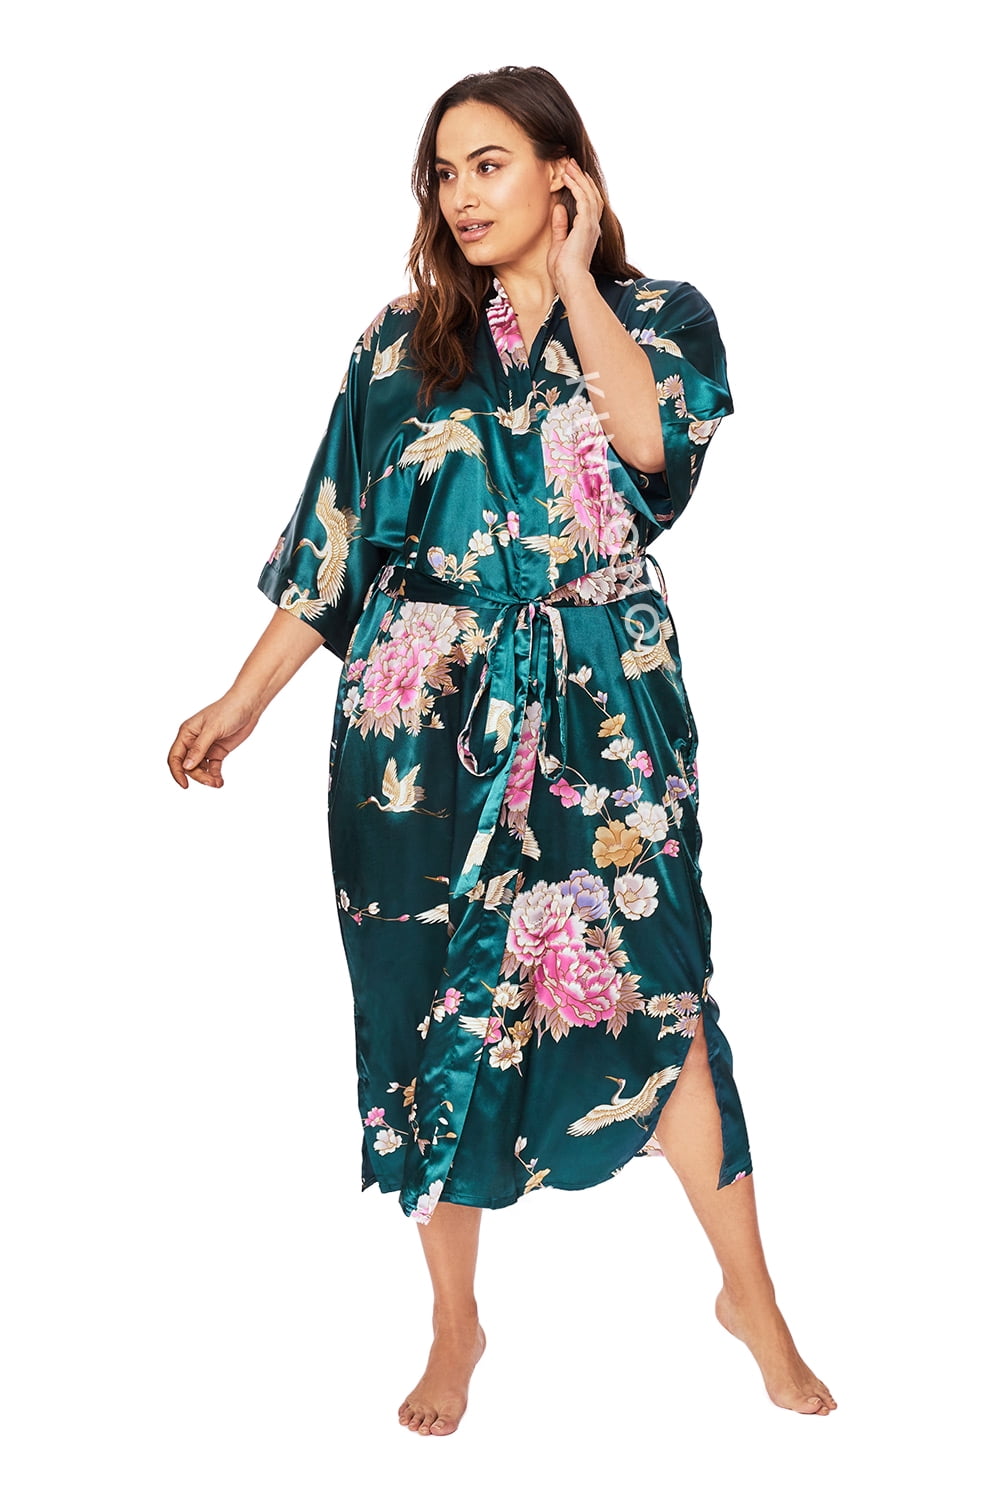 KIM+ONO Plus Size Long Kimonos Satin Robe for Women, Womens Kimono Robes,  Plus Size Japanese Robe- Floral - Chrysanthemum & Crane - Peacock